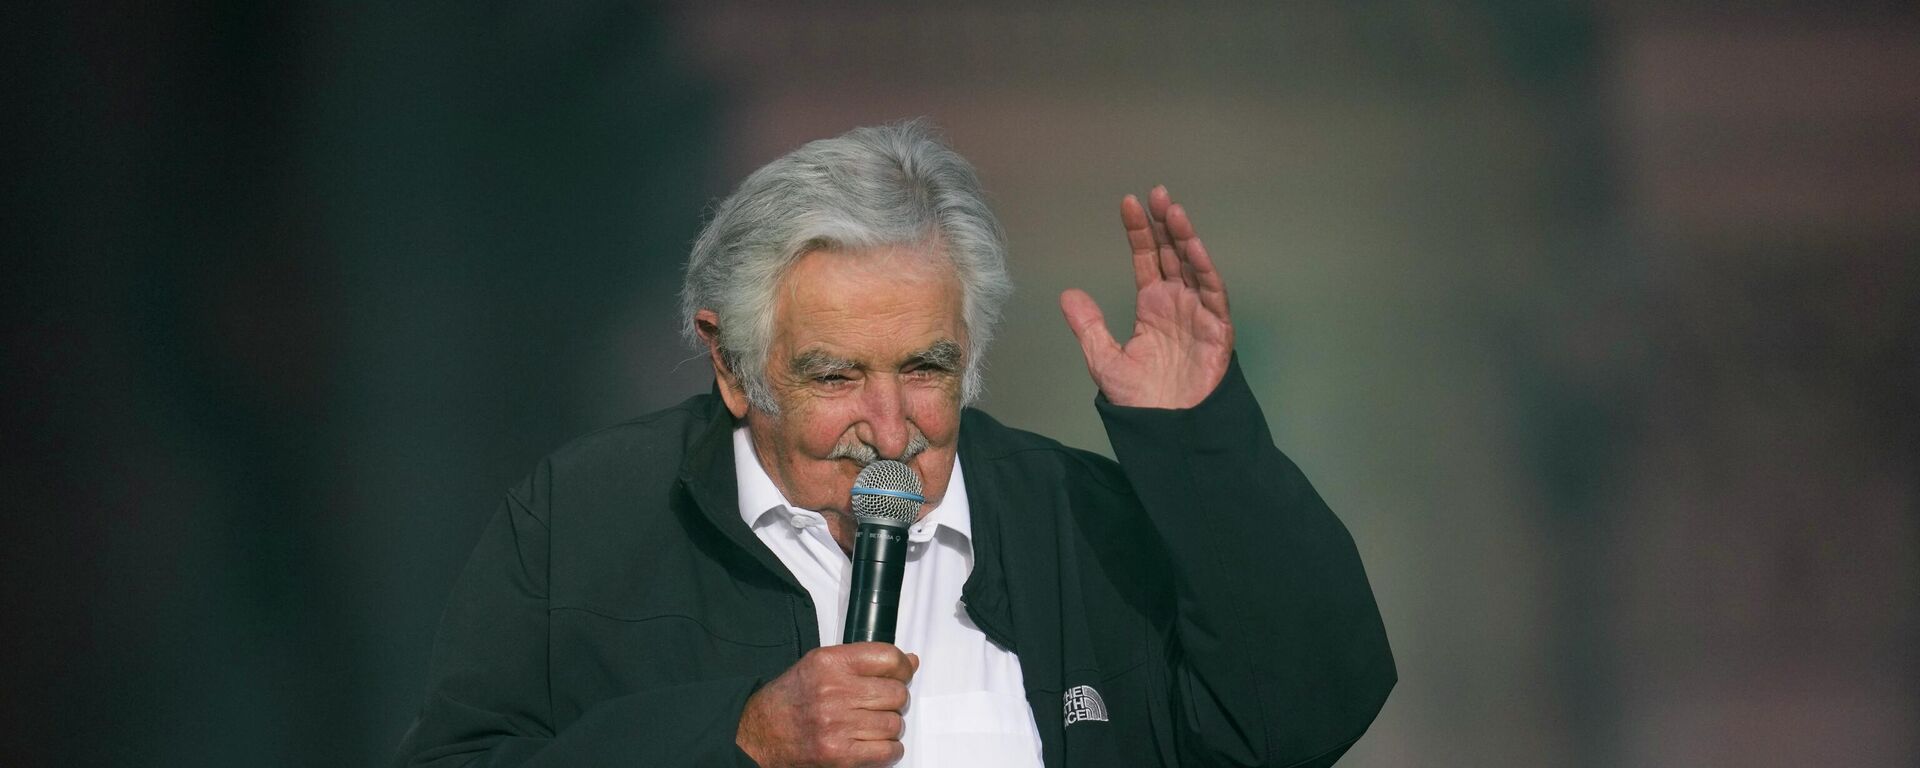 El expresidente uruguayo José 'Pepe' Mujica durante un acto en Buenos Aires en diciembre de 2021 - Sputnik Mundo, 1920, 11.05.2022